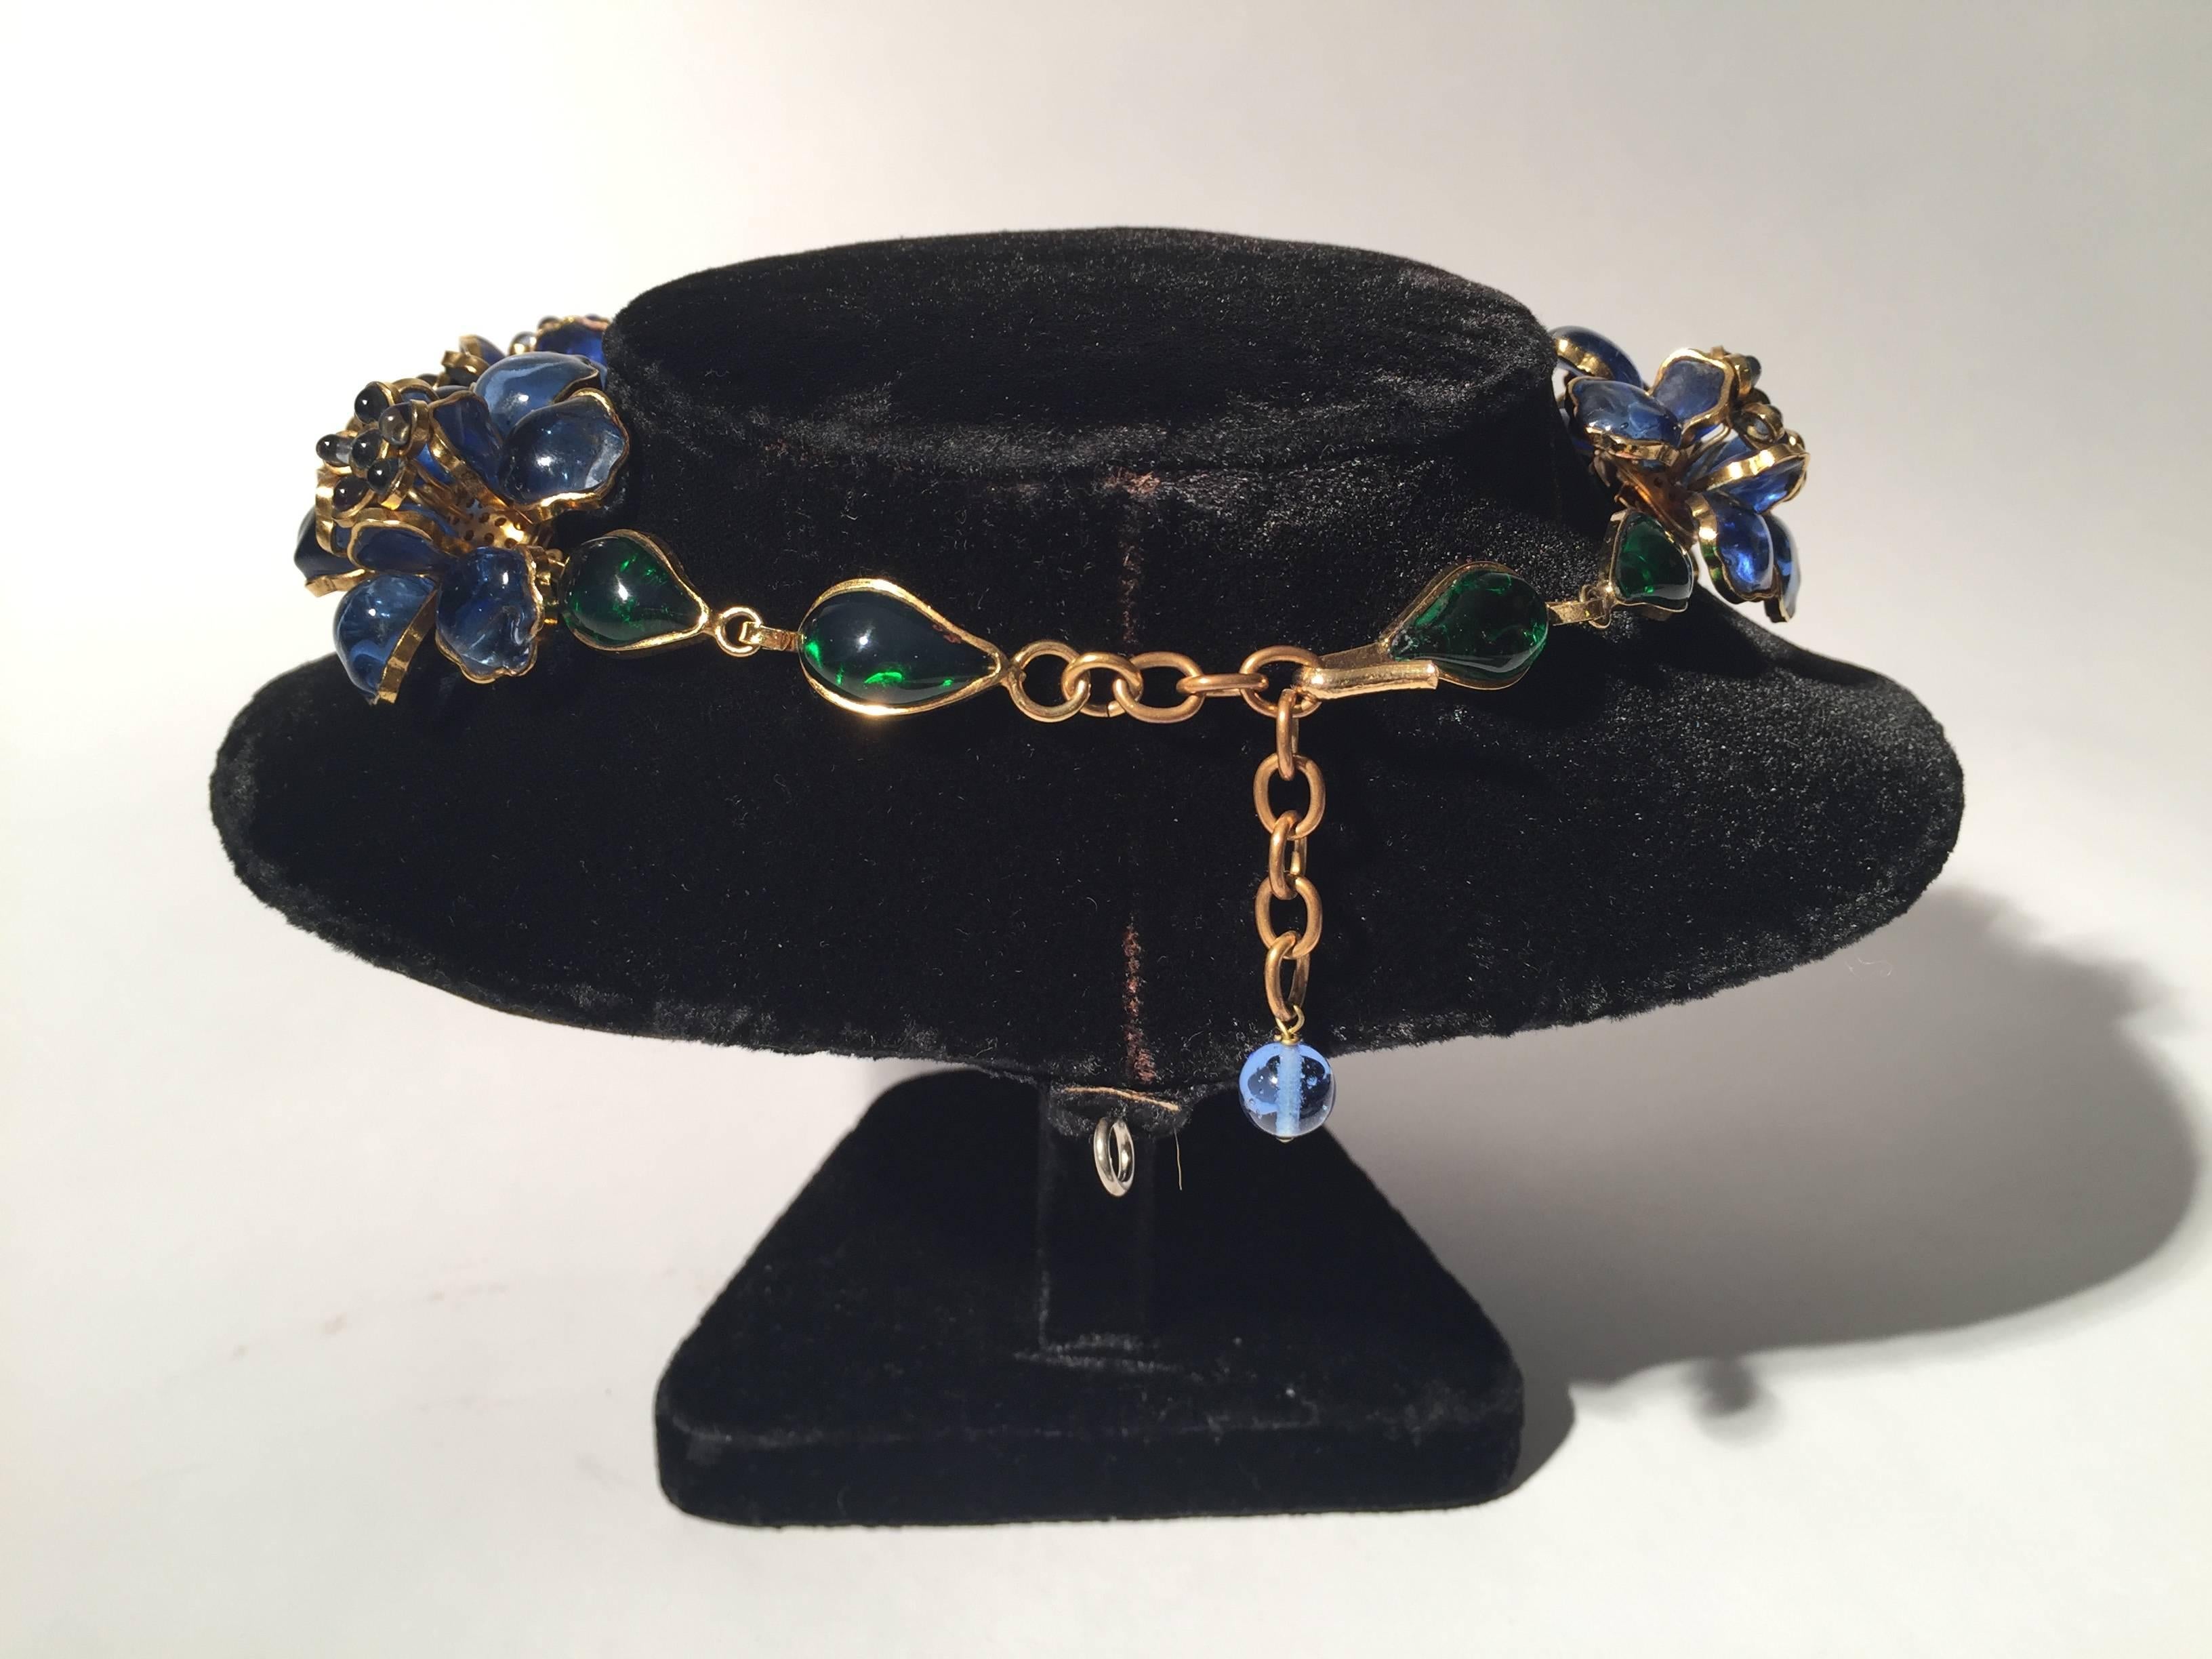 Late 20th Century Histoire De Verre, France Necklace, Magnificent Gripoix Poured Glass Necklace